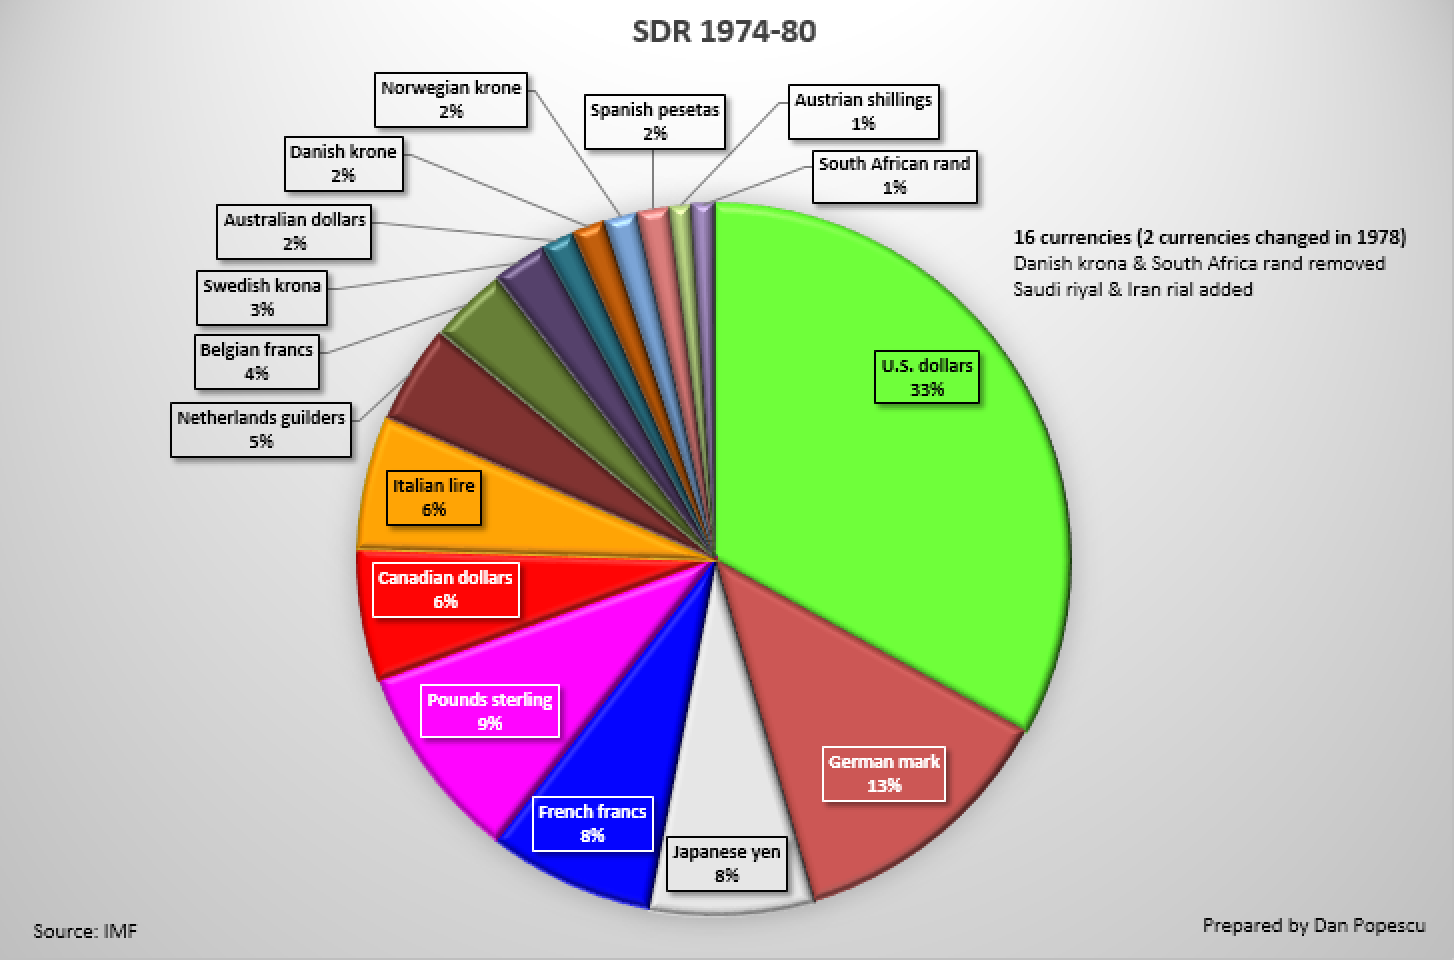 SDR 1974 - 1980